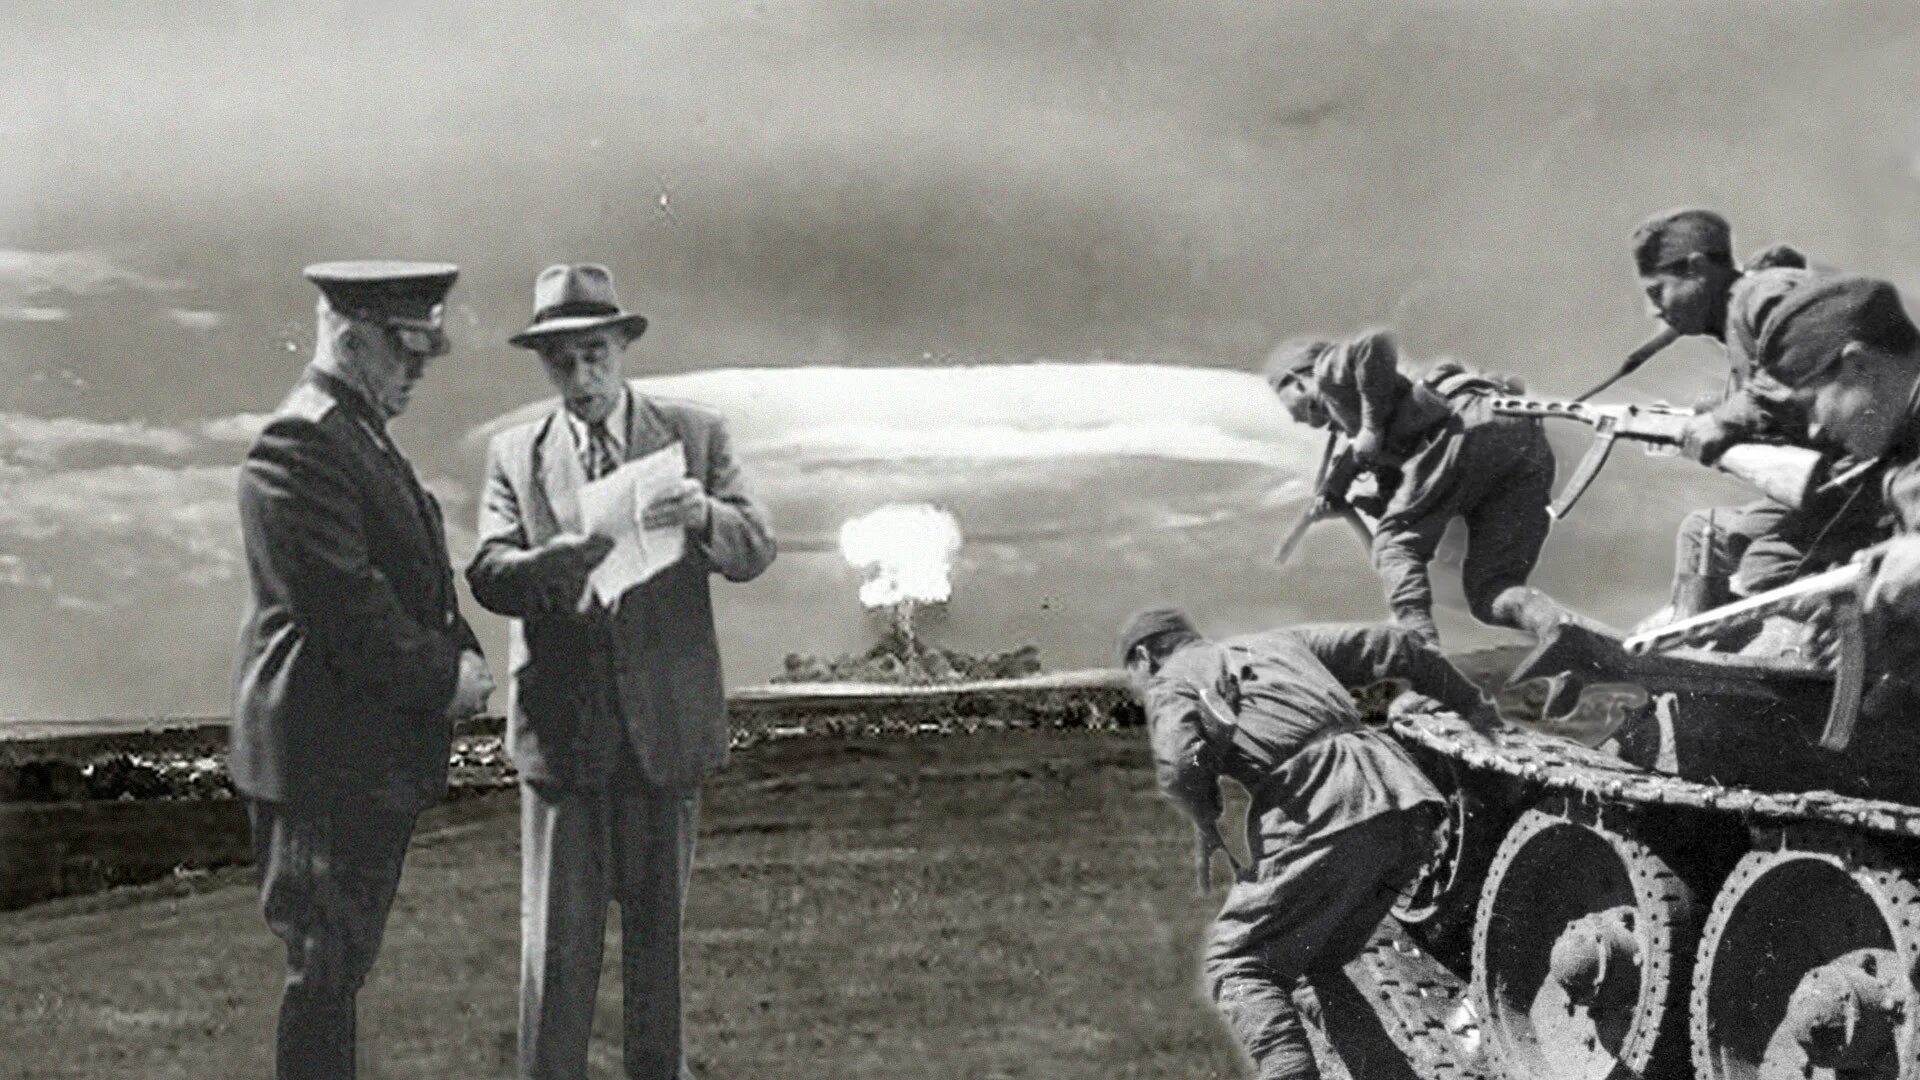 Ссср испытание. Ядерный взрыв на Тоцком полигоне в 1954. Тоцкий полигон 1954 год ядерные испытания. Ядерные учения на Тоцком полигоне 1954 года. 14 Сентября 1954 года на Тоцком полигоне.